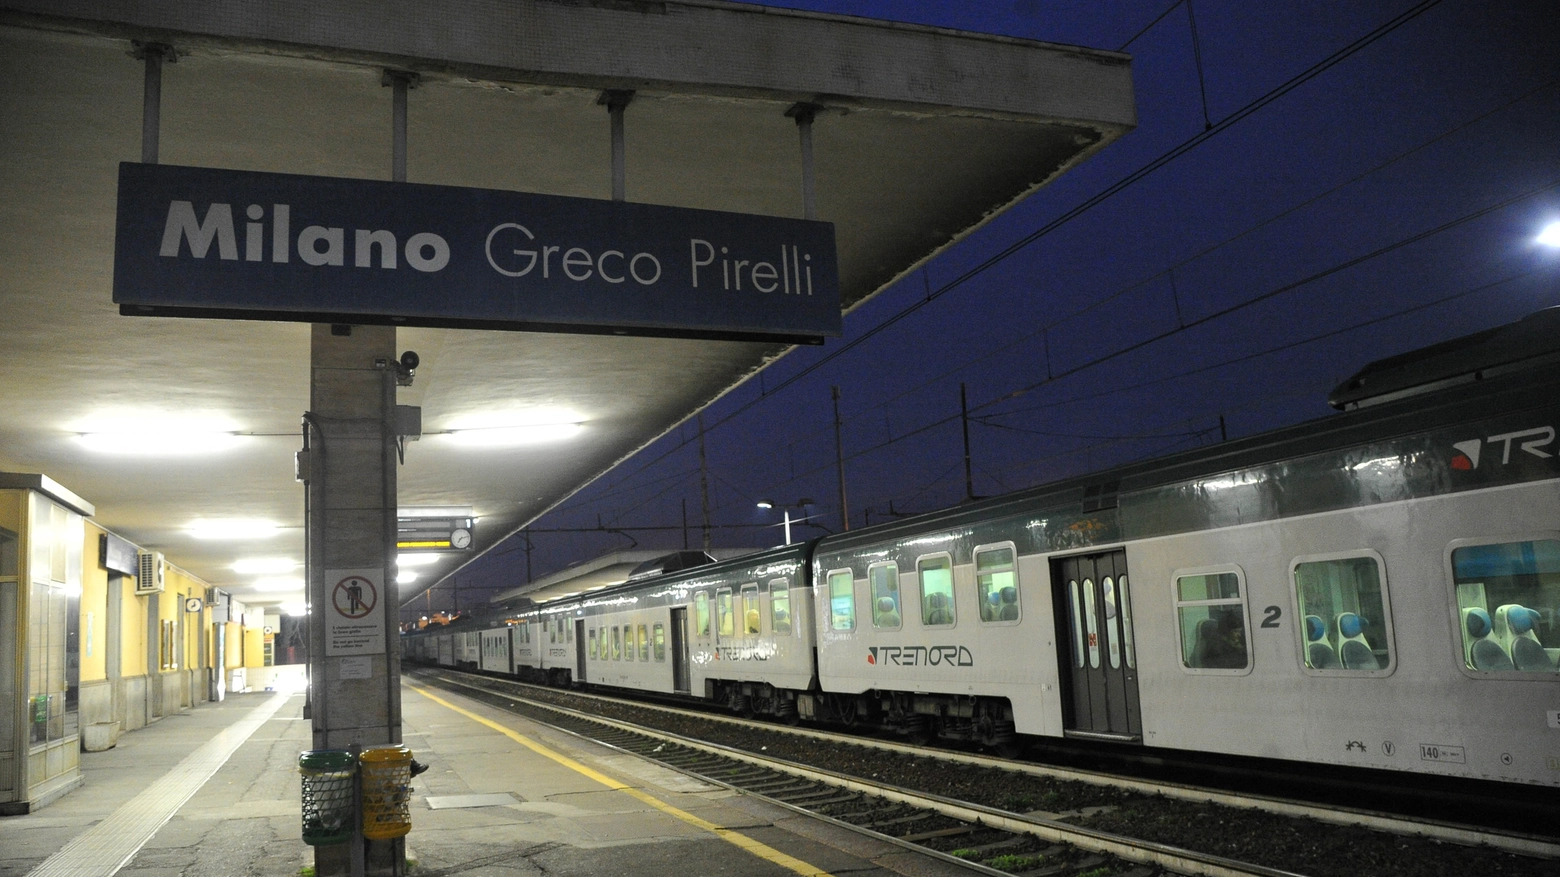 La stazione di Milano Greco Pirelli